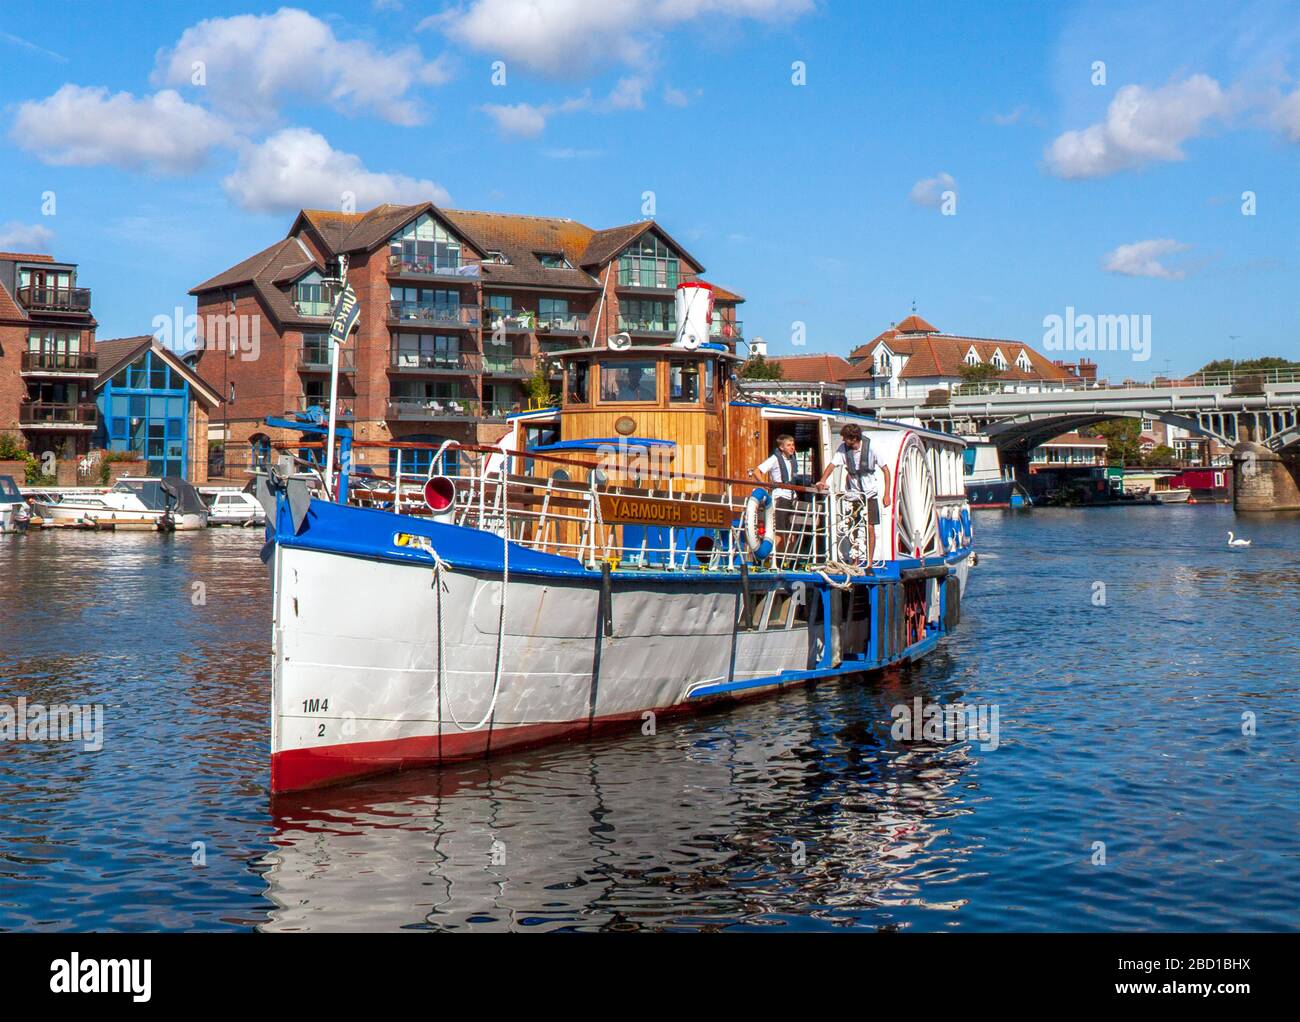 Le Yarmouth Belle s'approche de Turk's Wharf, Kingston upon Thames, Angleterre. Typique des bateaux qui ferry les passagers sur la Tamise. Banque D'Images